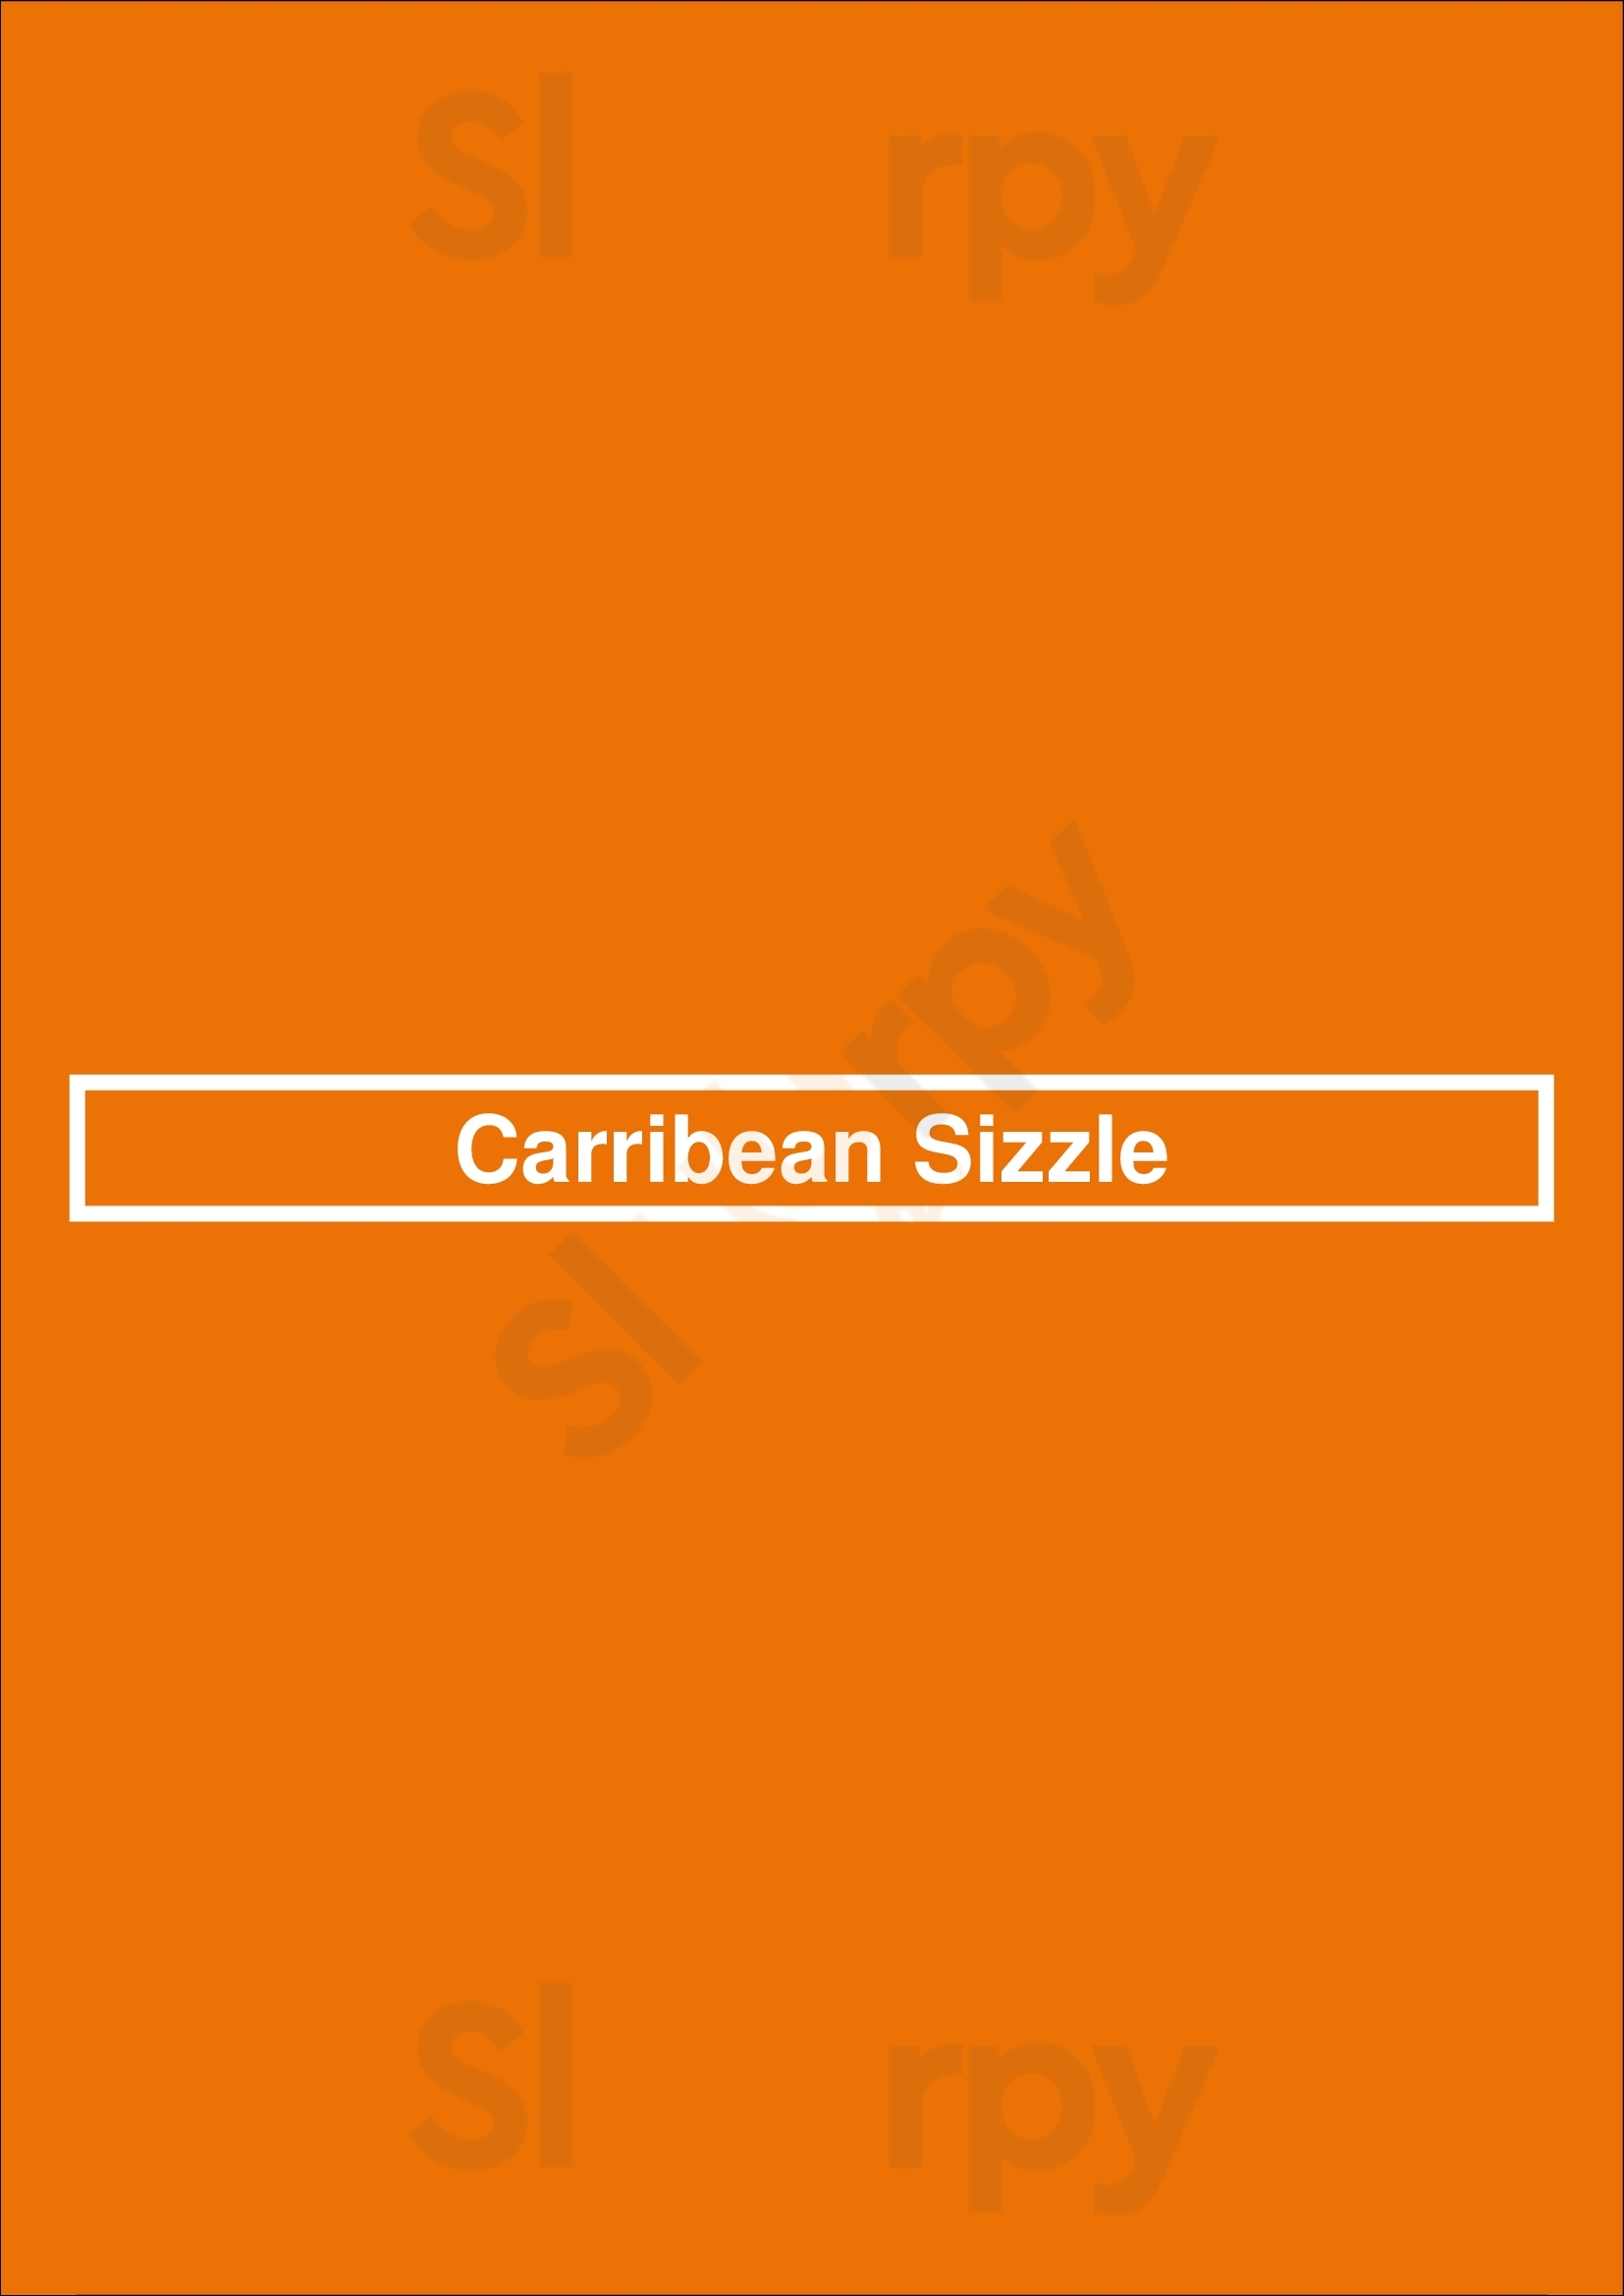 Carribean Sizzle Peterborough Menu - 1